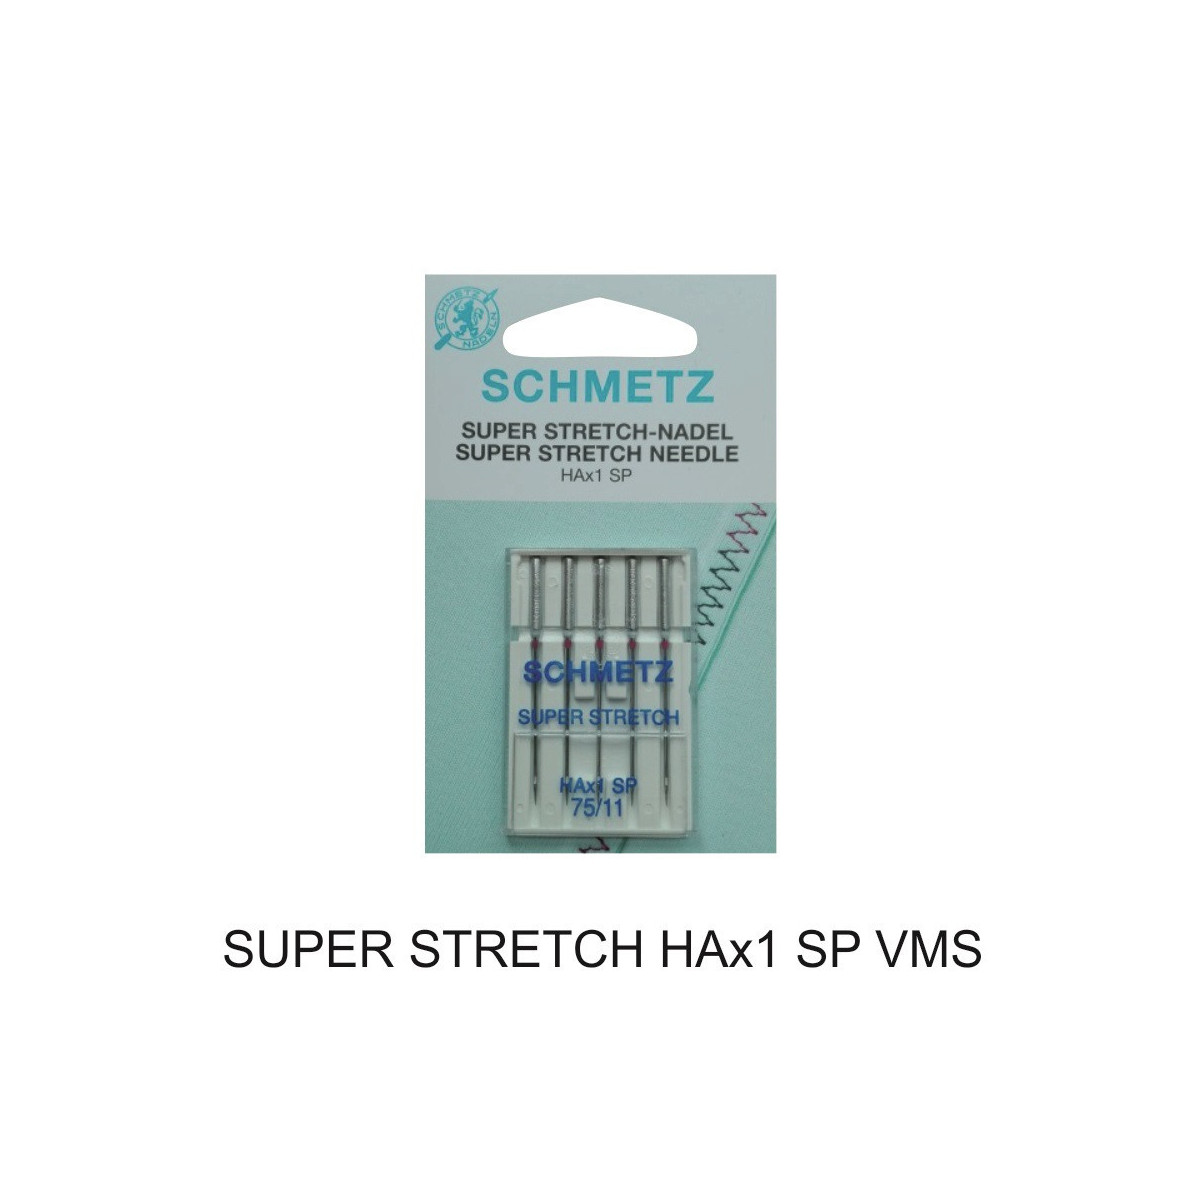 SUPER STRETCH HAx1 SP VMS - Igły do maszyn domowych